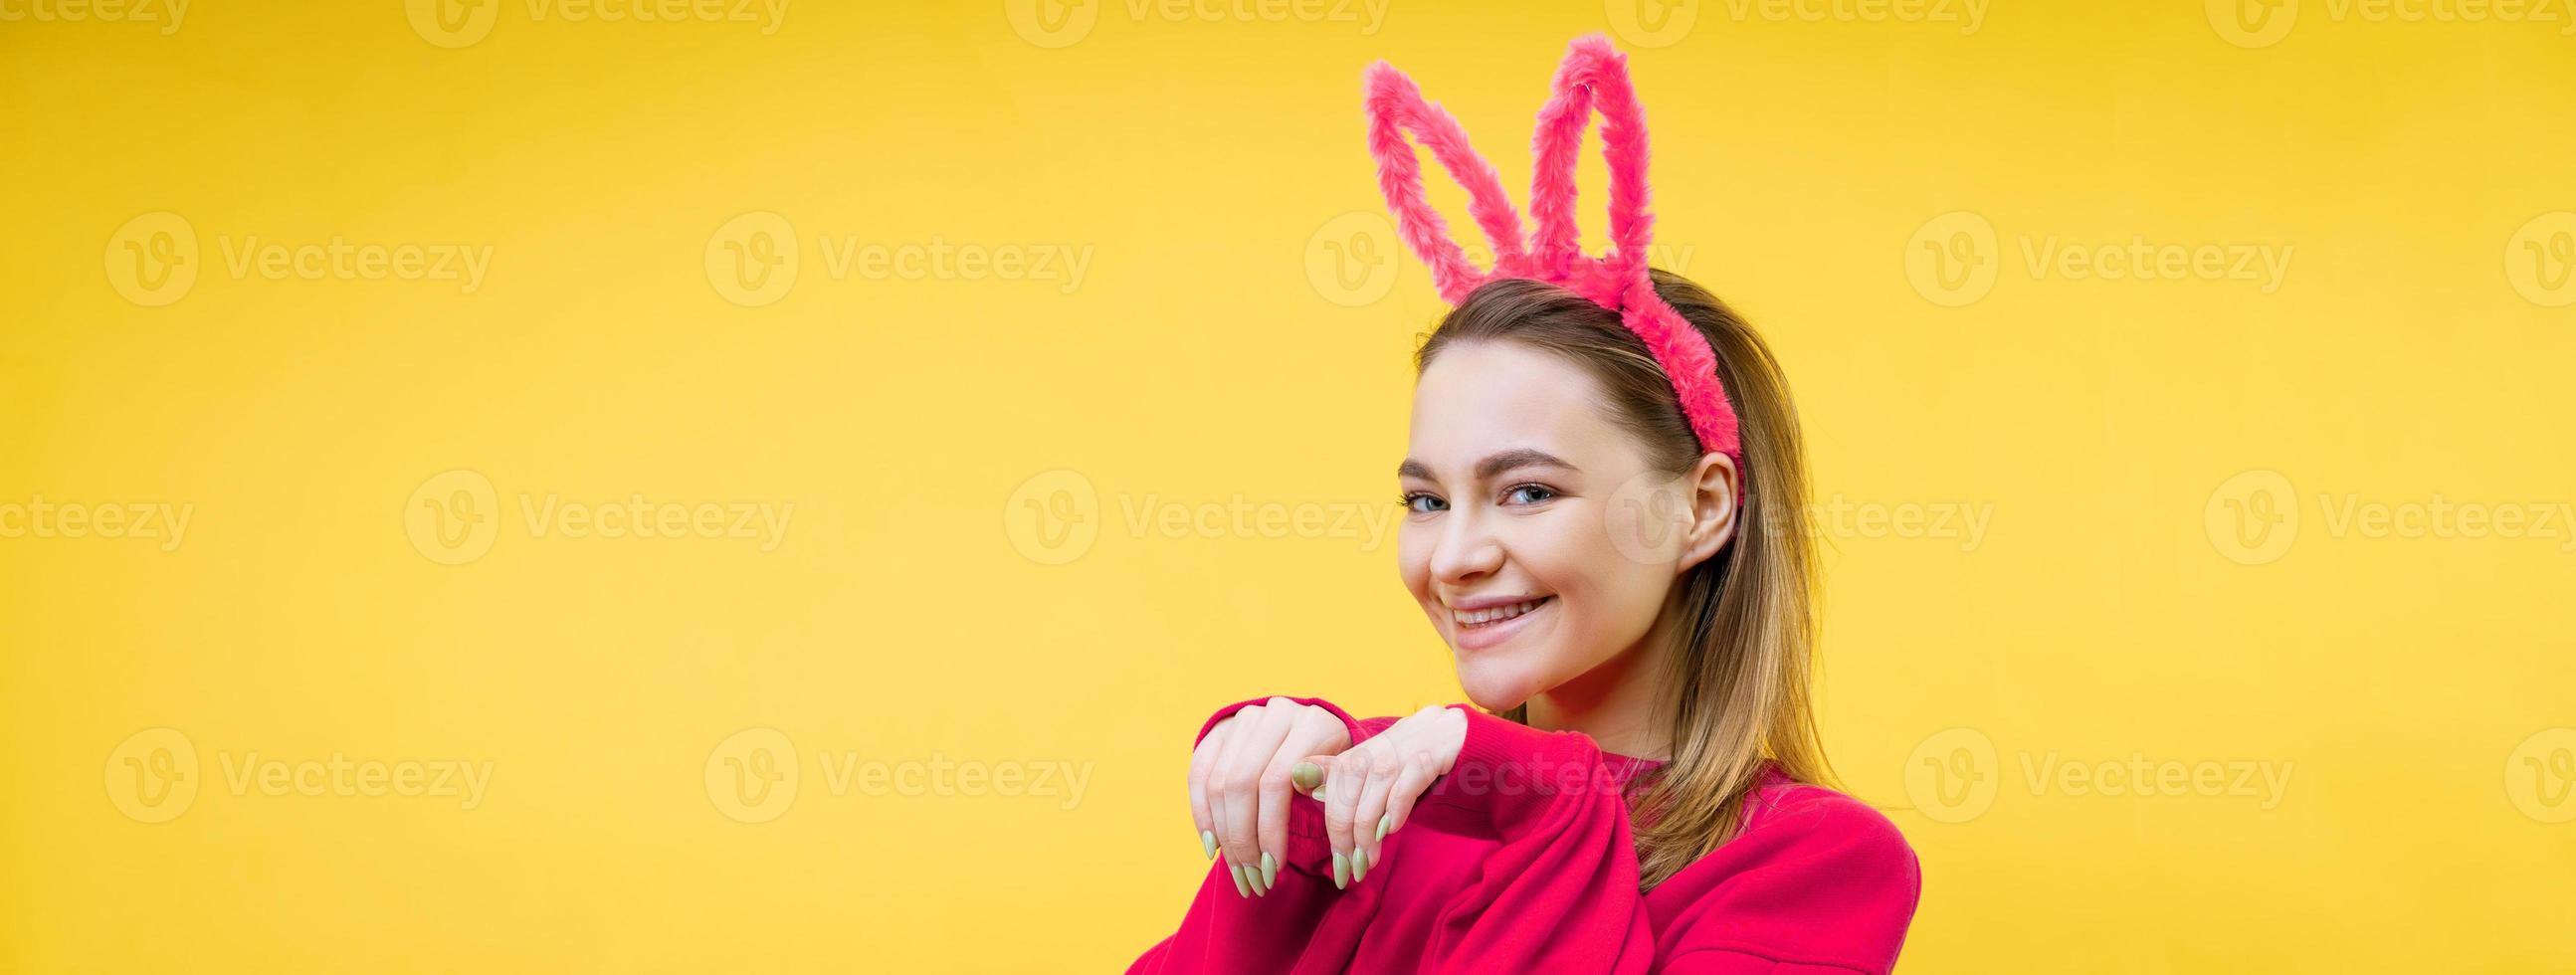 junge Frau in Hasenohren auf gelbem Hintergrund foto